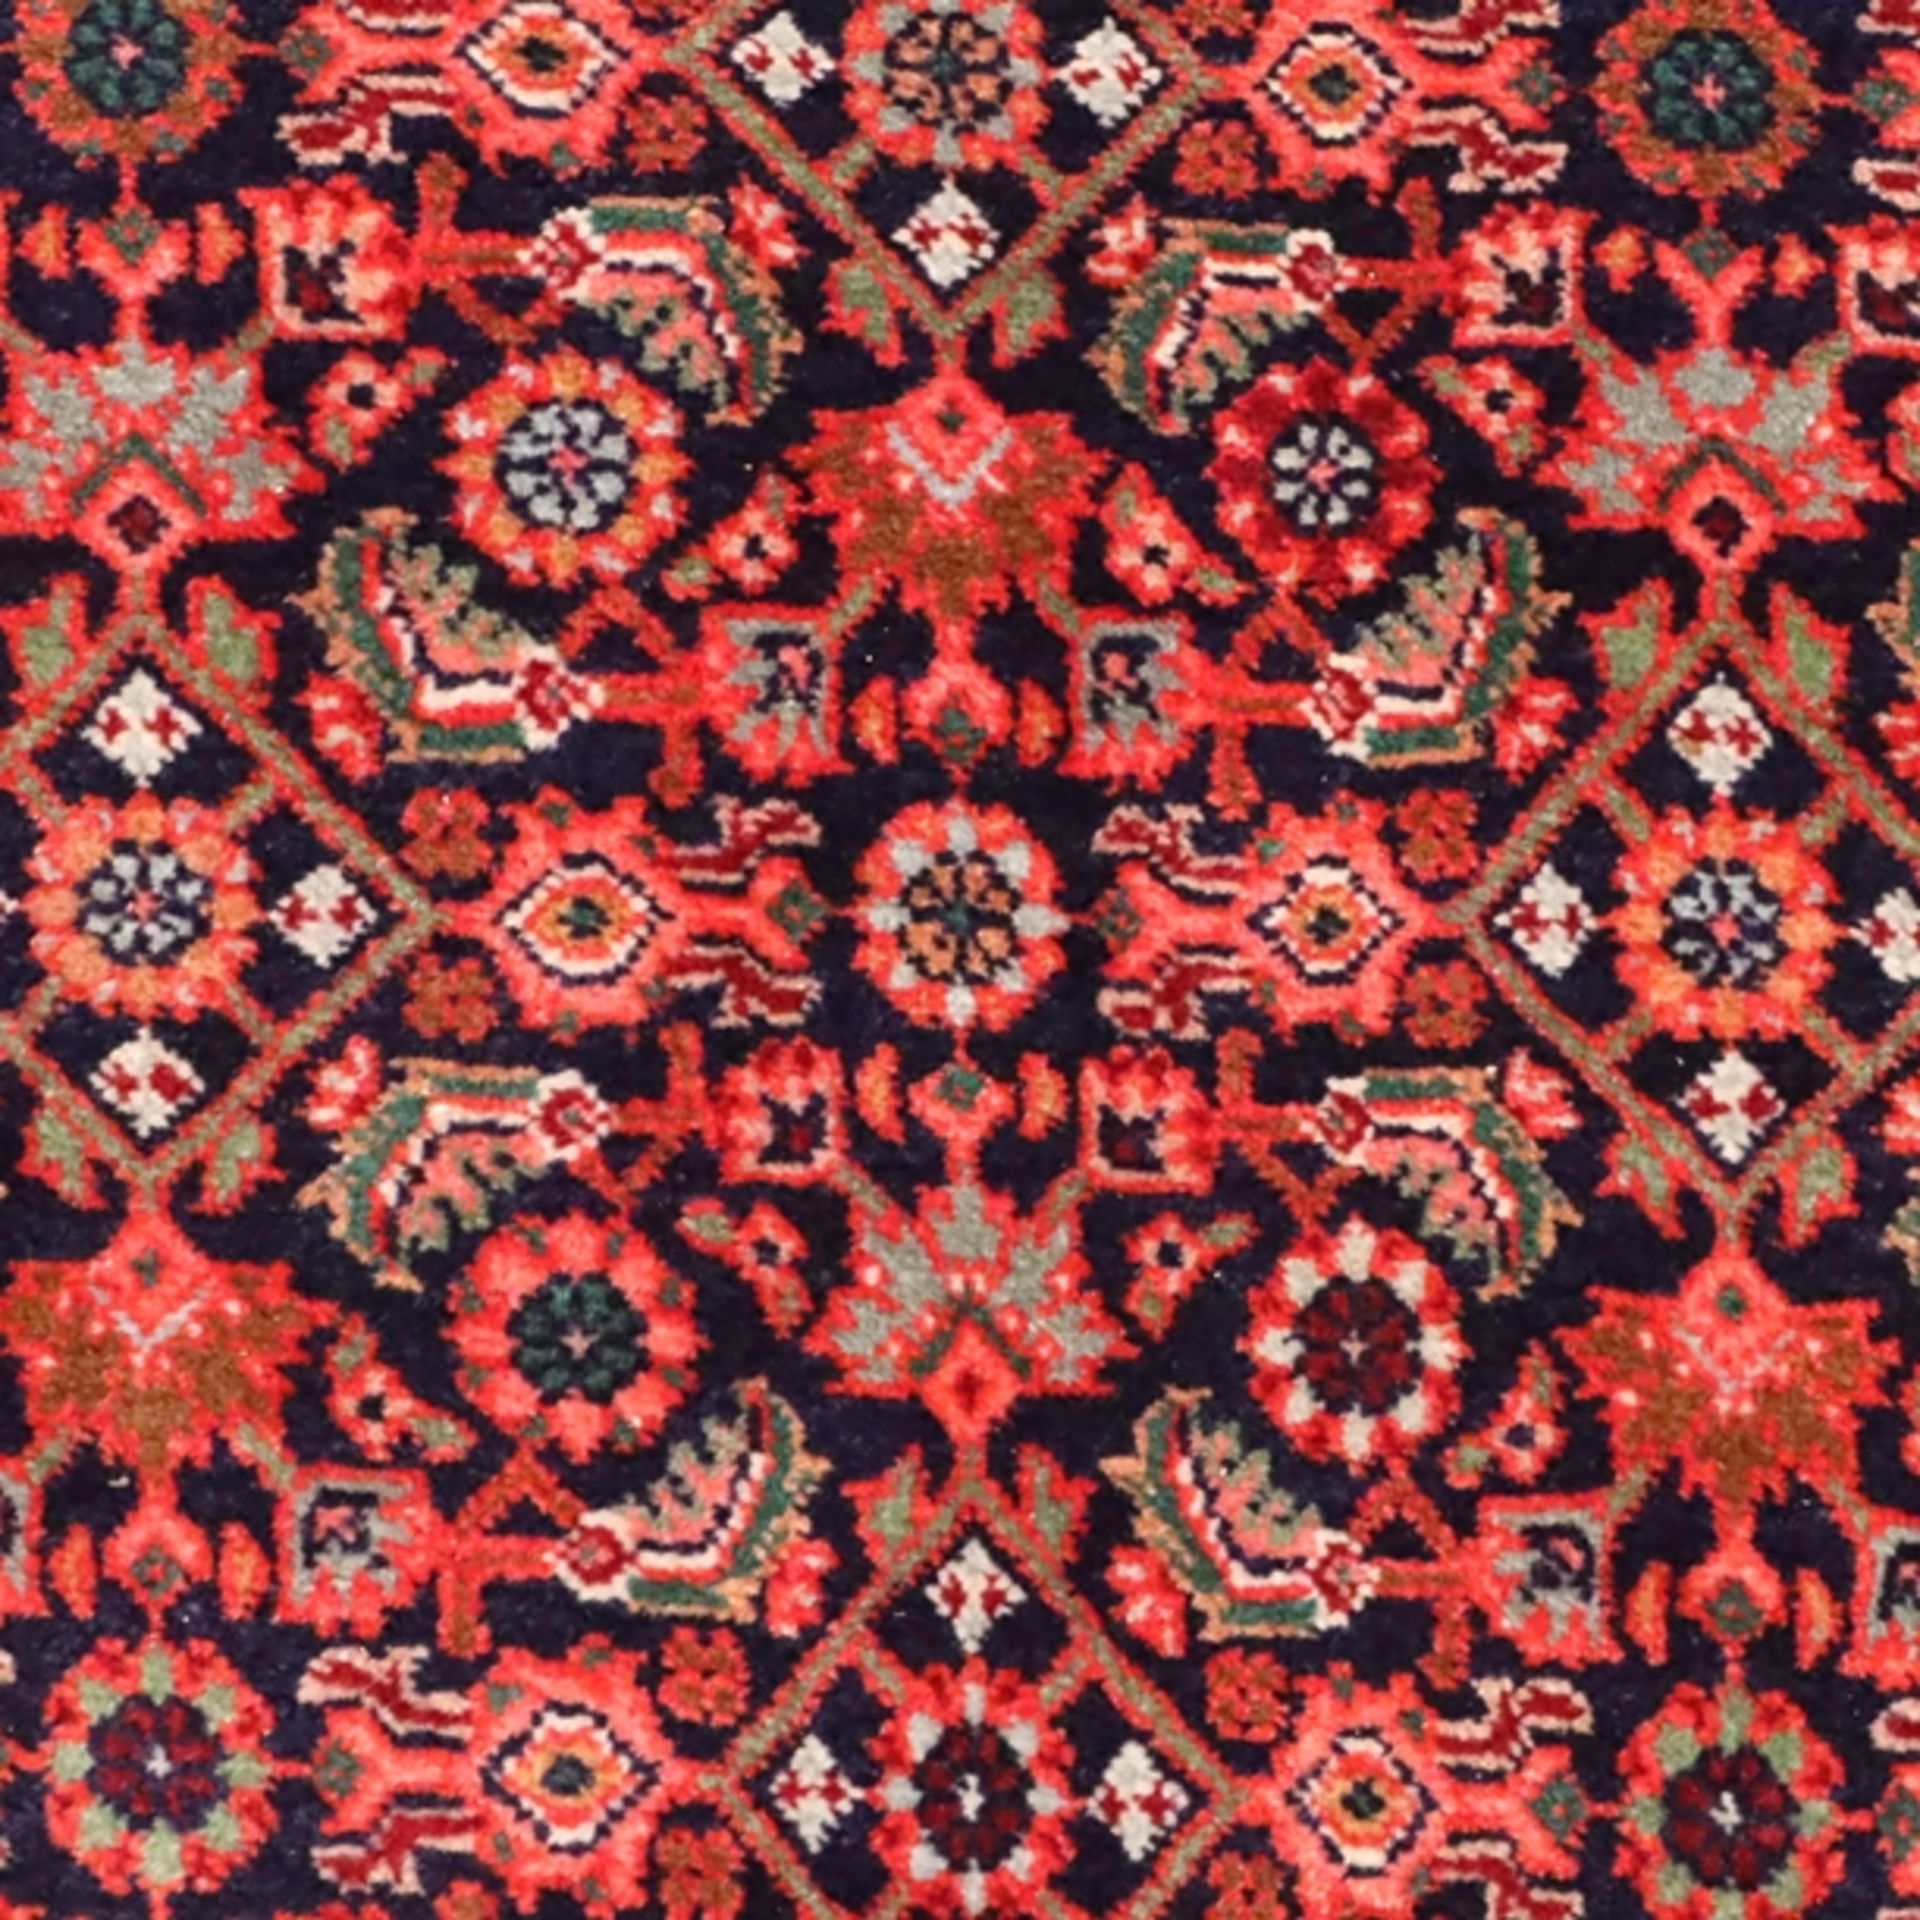 Bidjar - Persien, Wolle, rotgrundig, zentrales Medaillon, ornamentales und florales Muster, mehrfac - Image 7 of 7